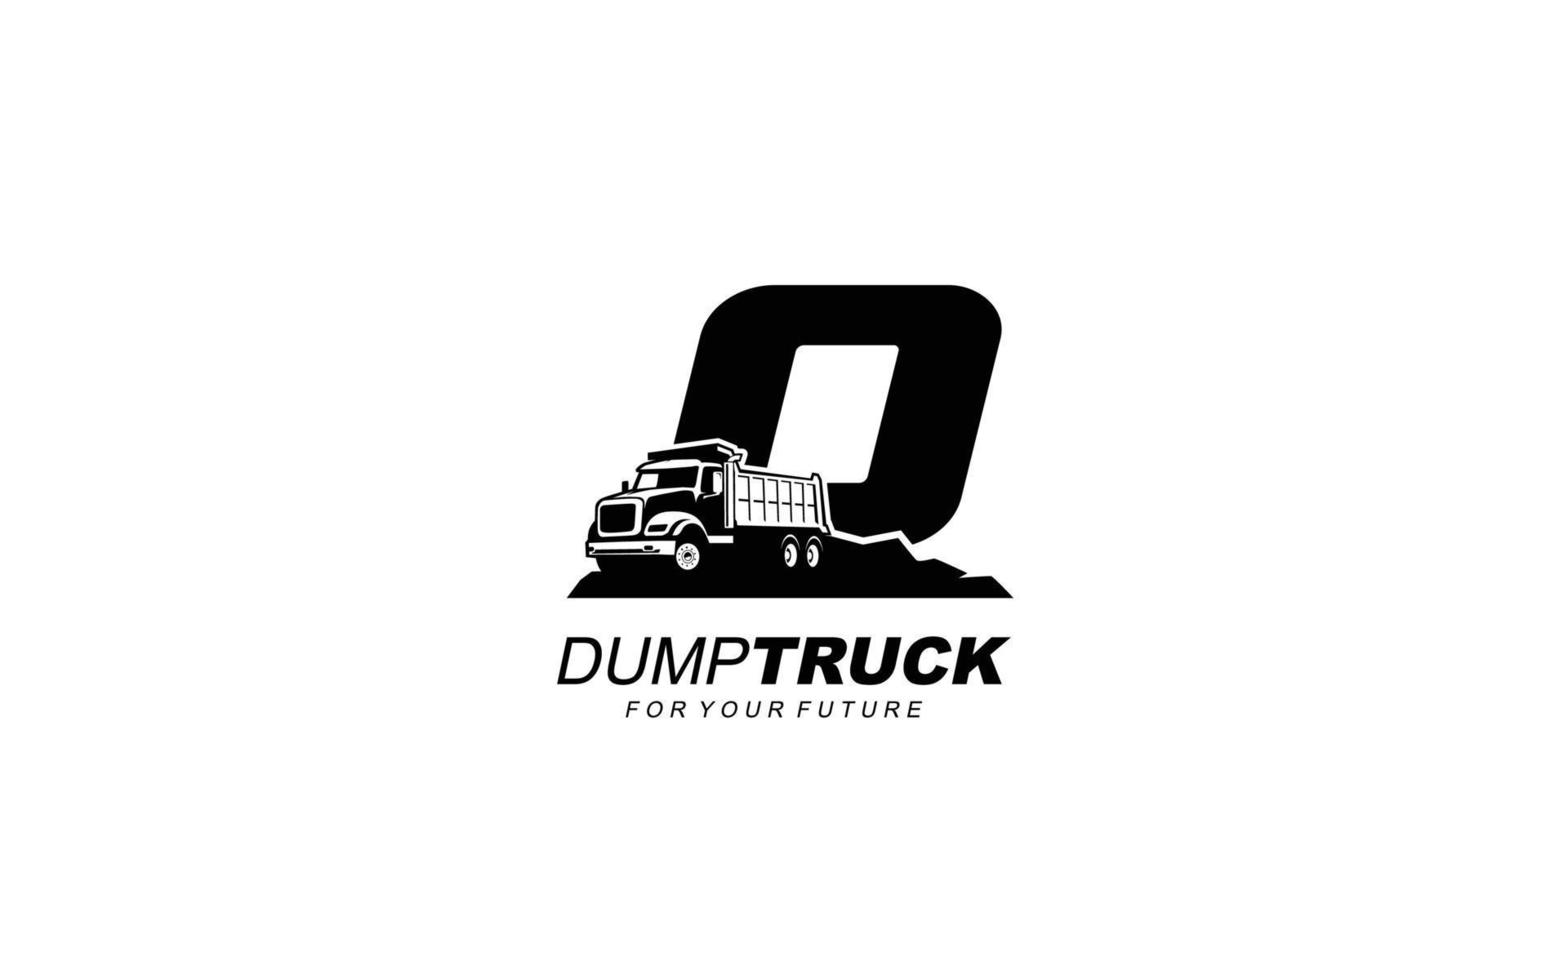 Camión volquete con logo d para empresa constructora. ilustración de vector de plantilla de equipo pesado para su marca.